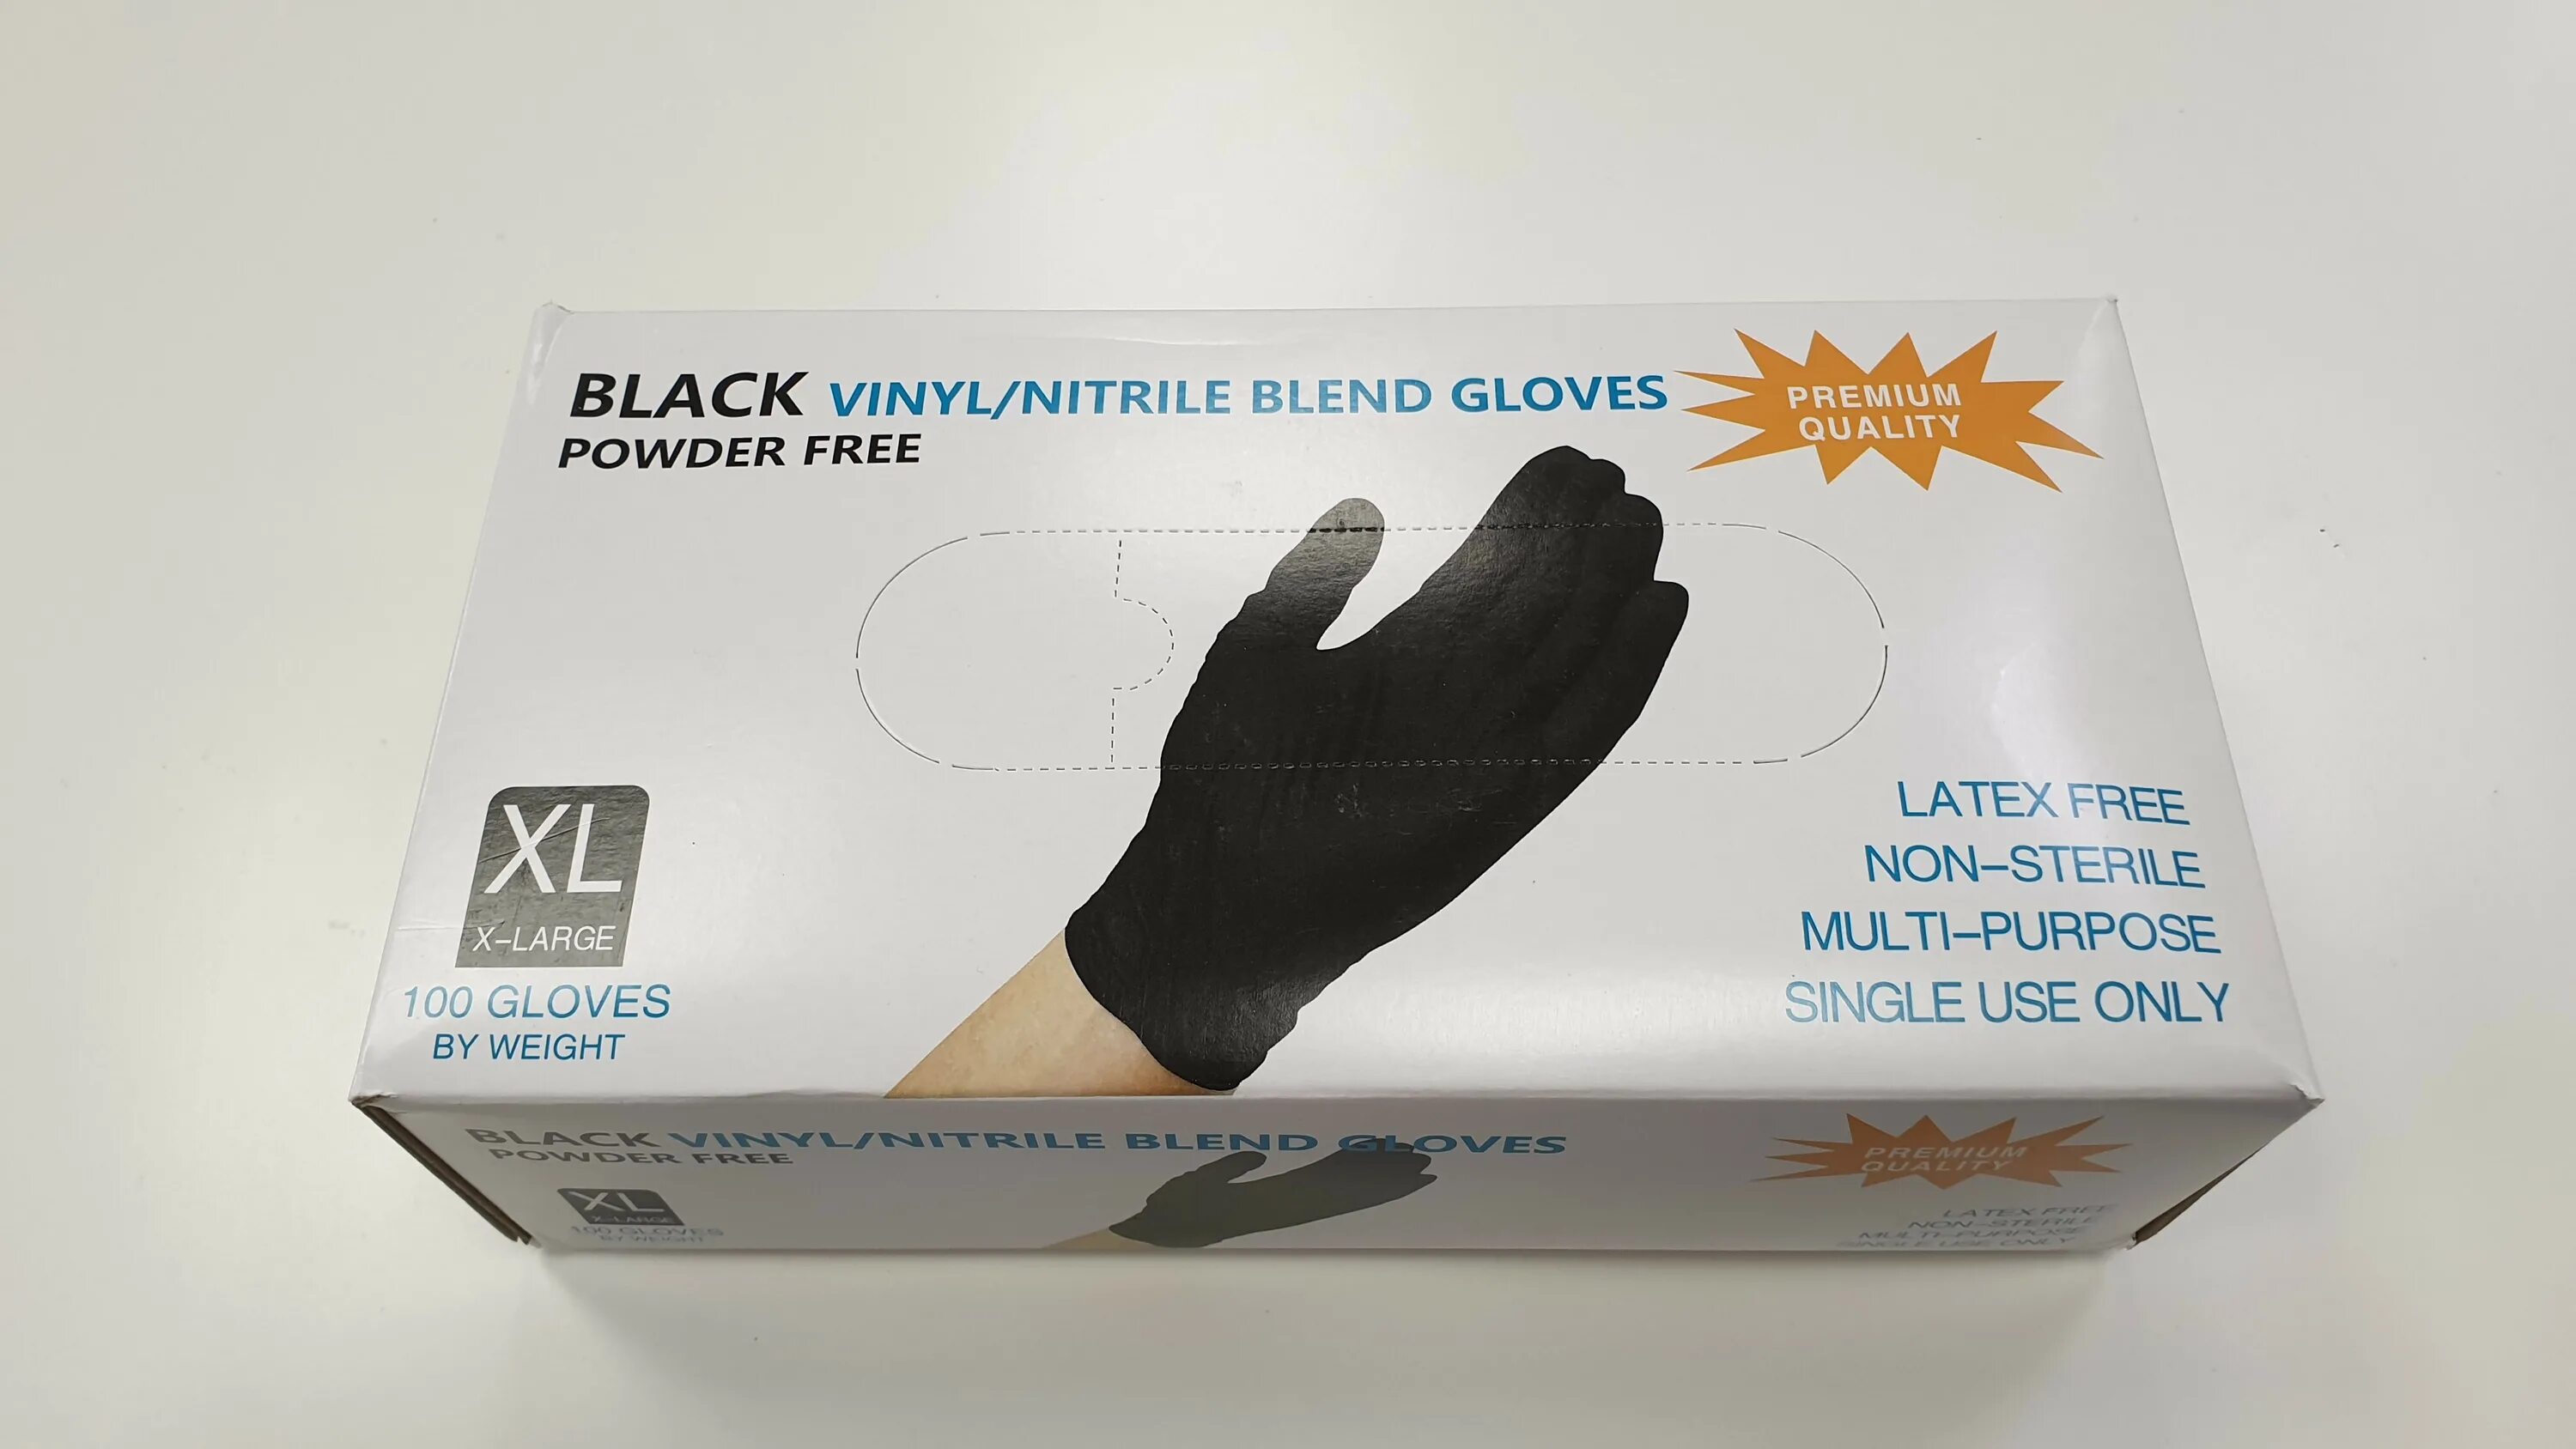 В мешке находятся 24 черные перчатки. Перчатки нитриловые черные Wally Plastic. Перчатки хозяйственные Wally Plastic, 50 пар. Перчатки Vinyl/Nitrile Blend Gloves. Перчатки нитриловые-виниловые черные 100 шт, размер XL, "Wally Plastic" (Китай).